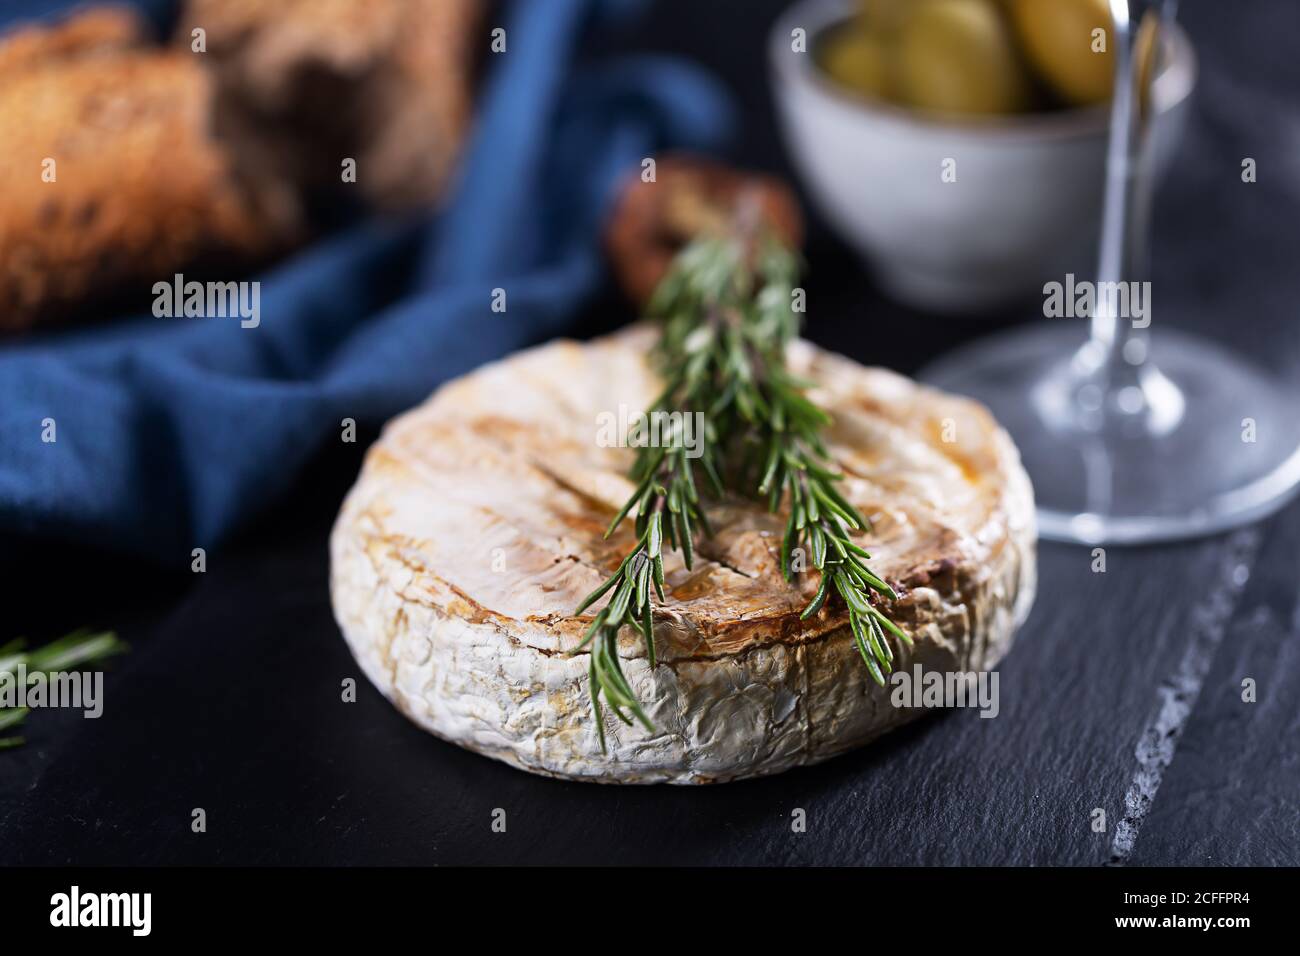 Formaggio camembert al forno con rosmarino, olive e pane su sfondo scuro, primo piano Foto Stock